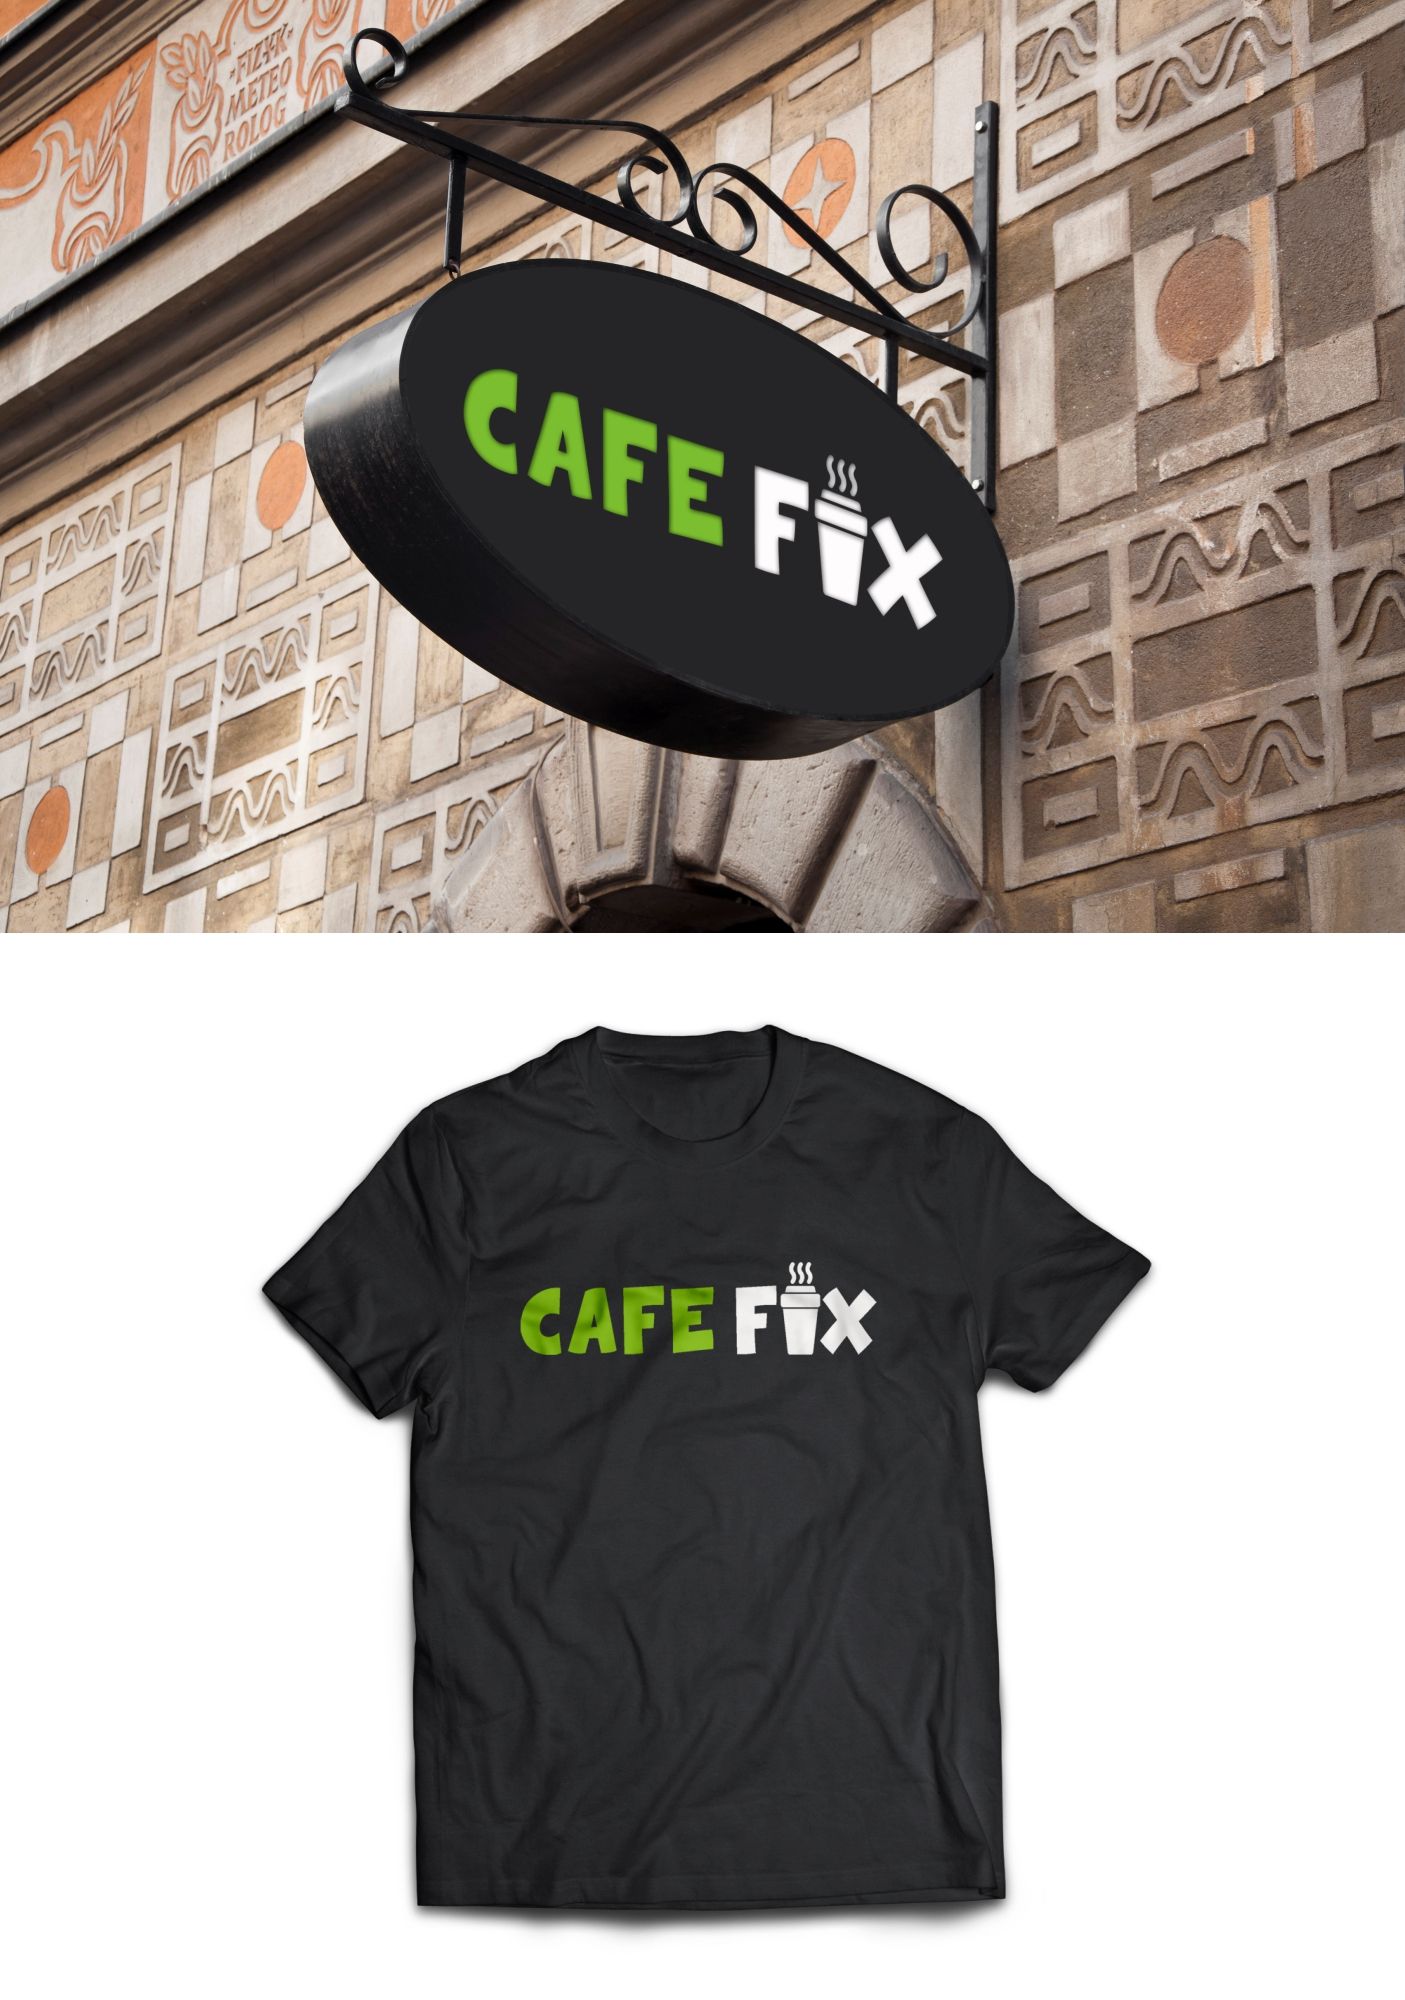 Лого и фирменный стиль для Coffee FIX - дизайнер serz4868